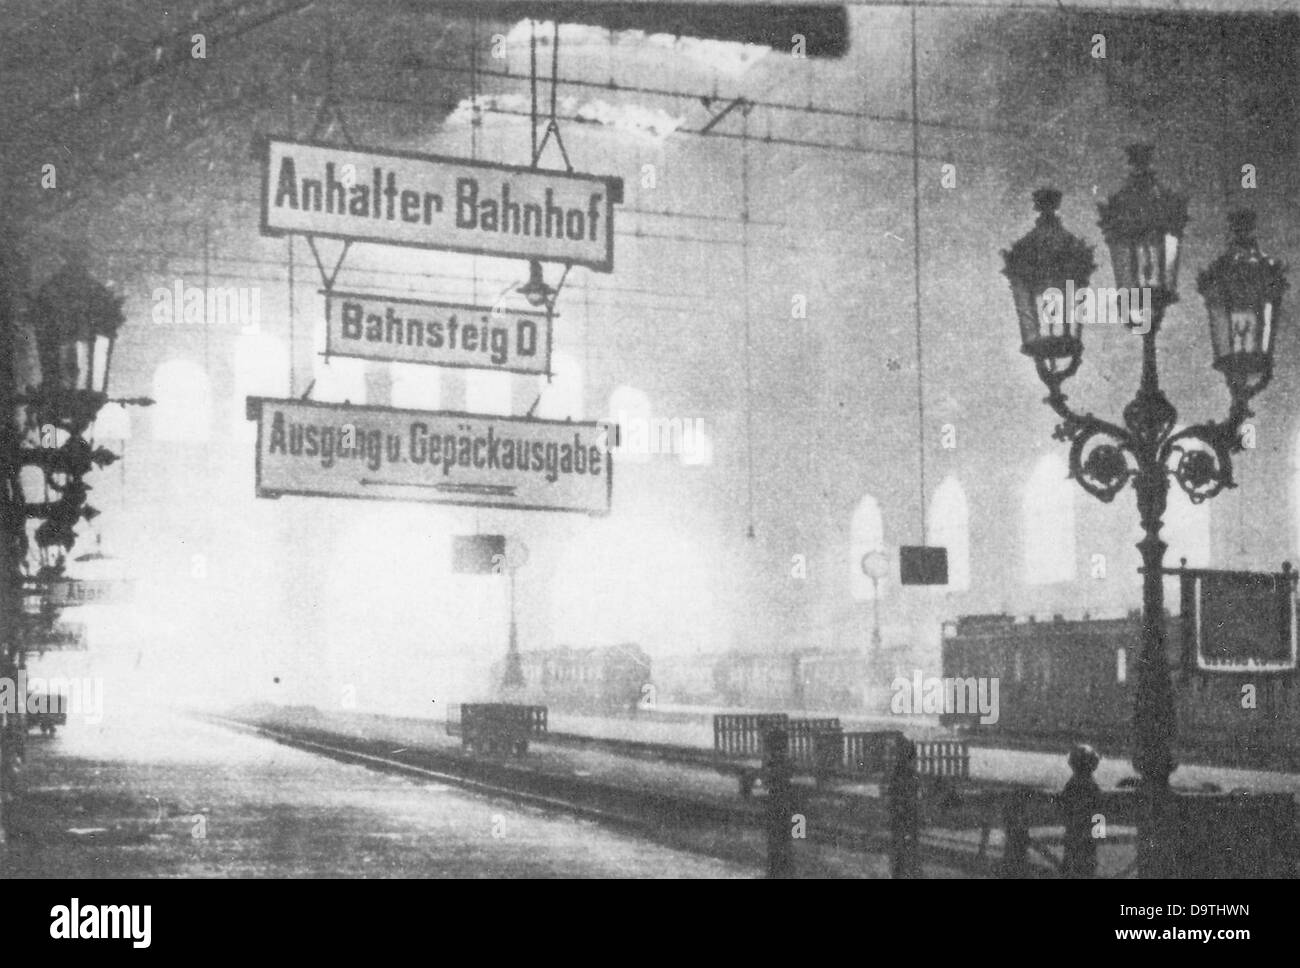 Rivoluzione tedesca 1918/1919: La riproduzione dello Schweizer Illustrrte Zeitung (giornale svizzero illustrato) dal 19 marzo 1919 mostra il vuoto Anhalter Bahnhof a Berlino, in Germania, durante le rivolte. Fotoarchiv für Zeitgeschichte Foto Stock